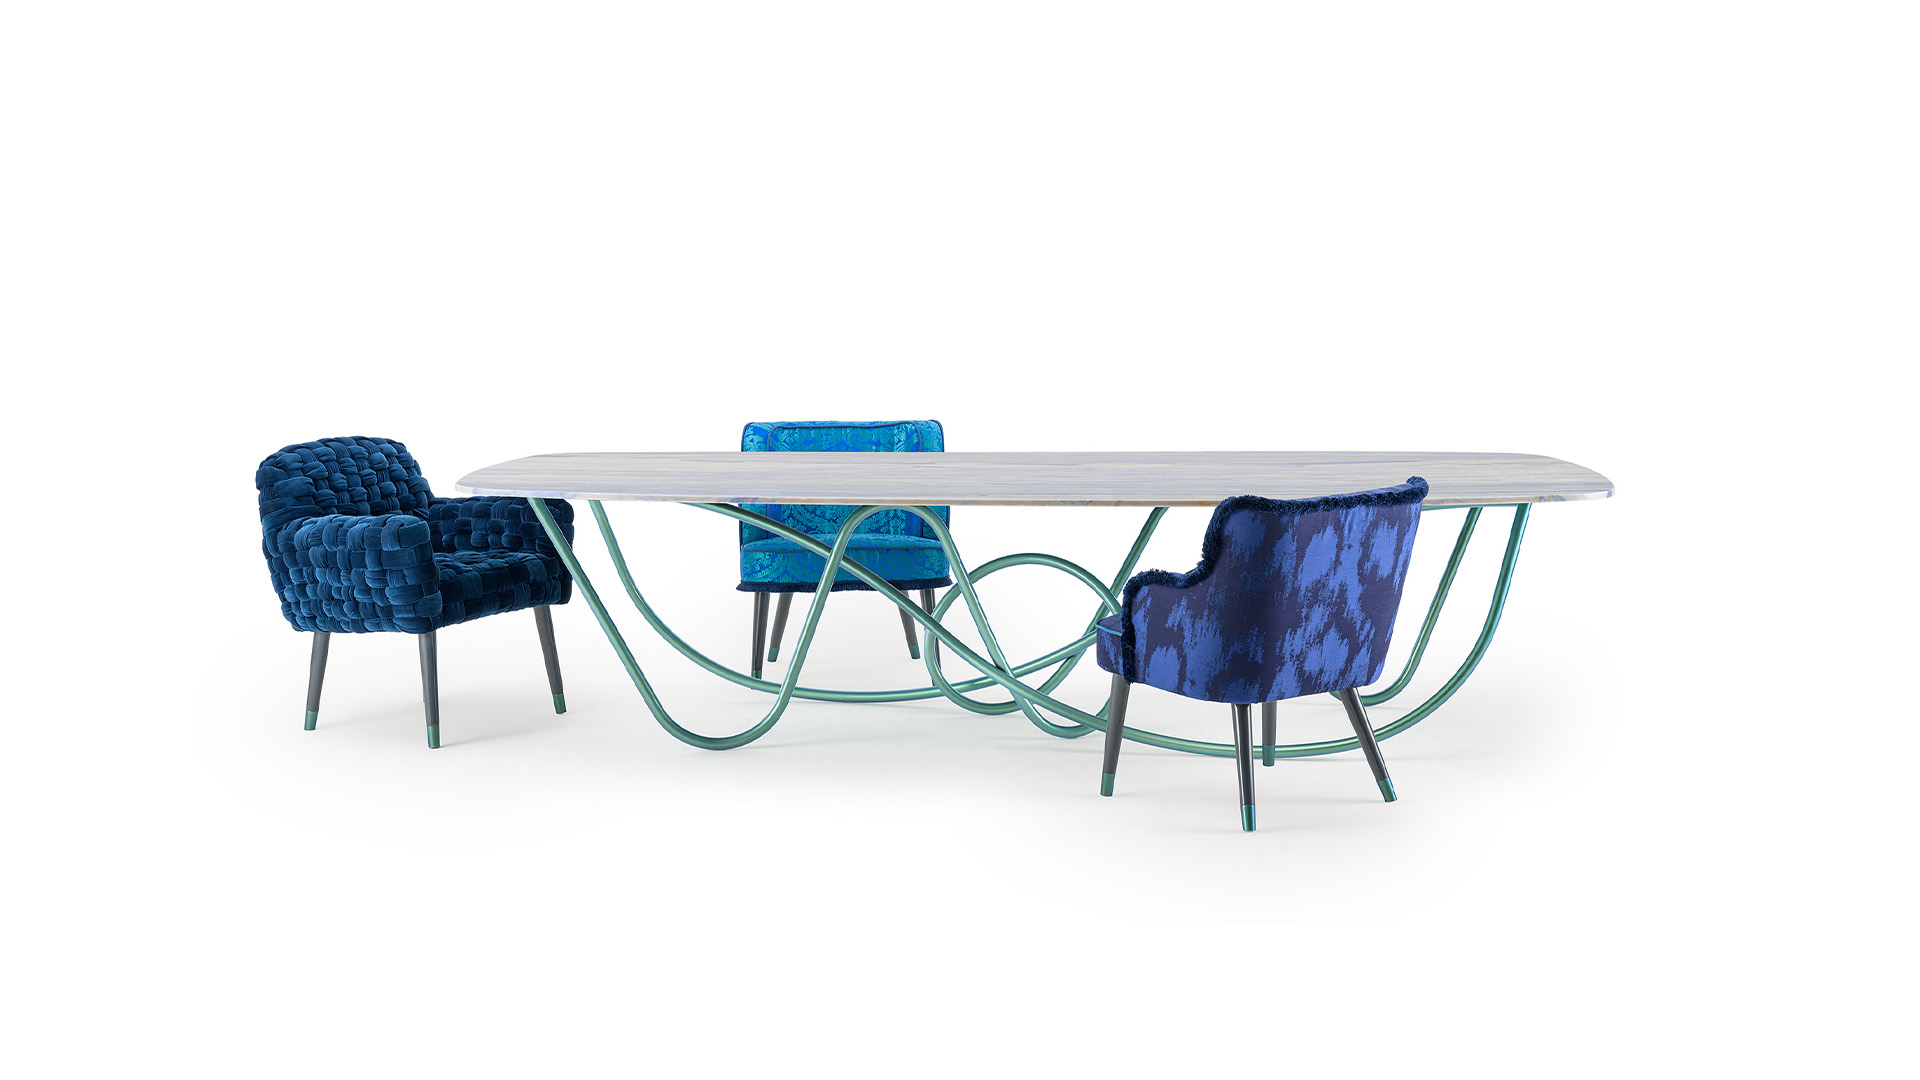 Azul table by Turri